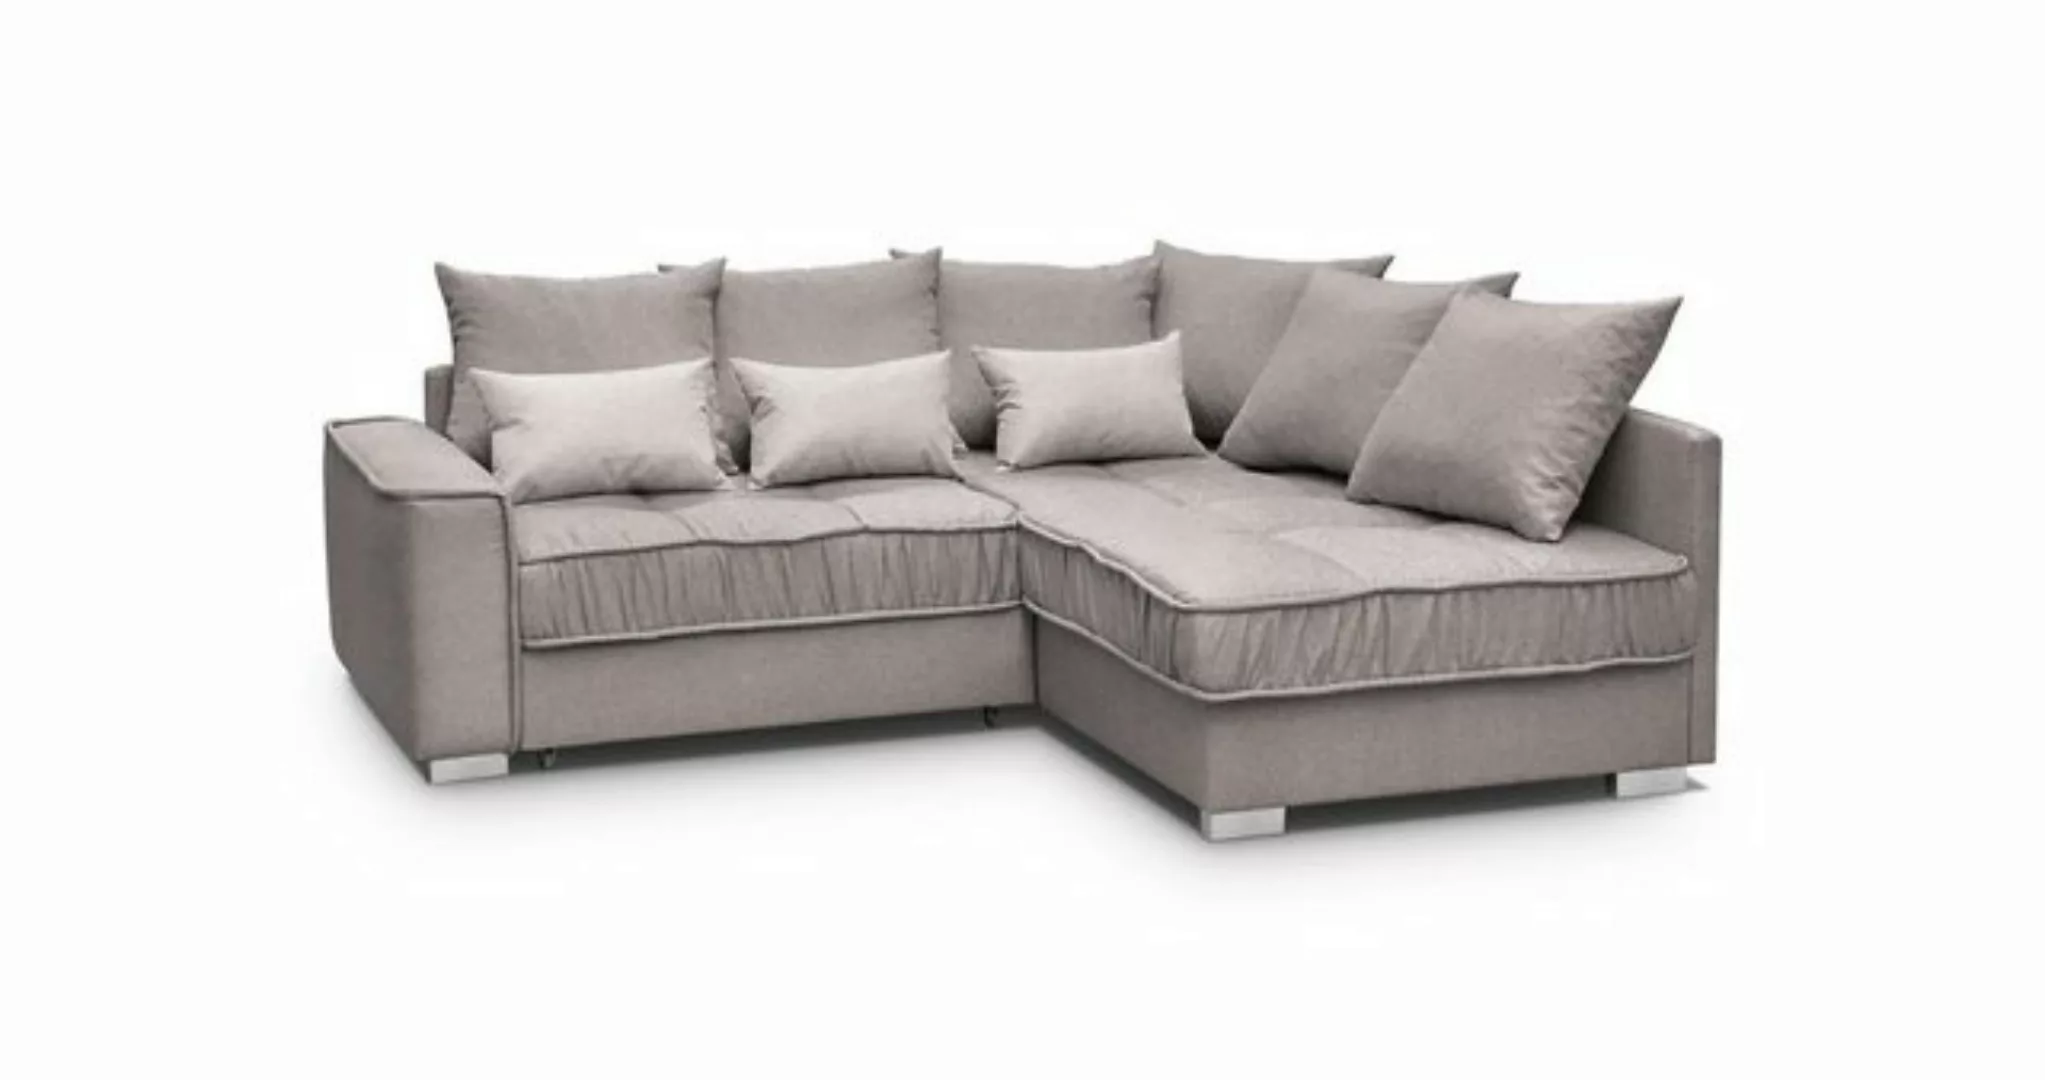 Beautysofa Polsterecke Modern Eckcouch Couch Ralf mit Bettkasten und Schlaf günstig online kaufen